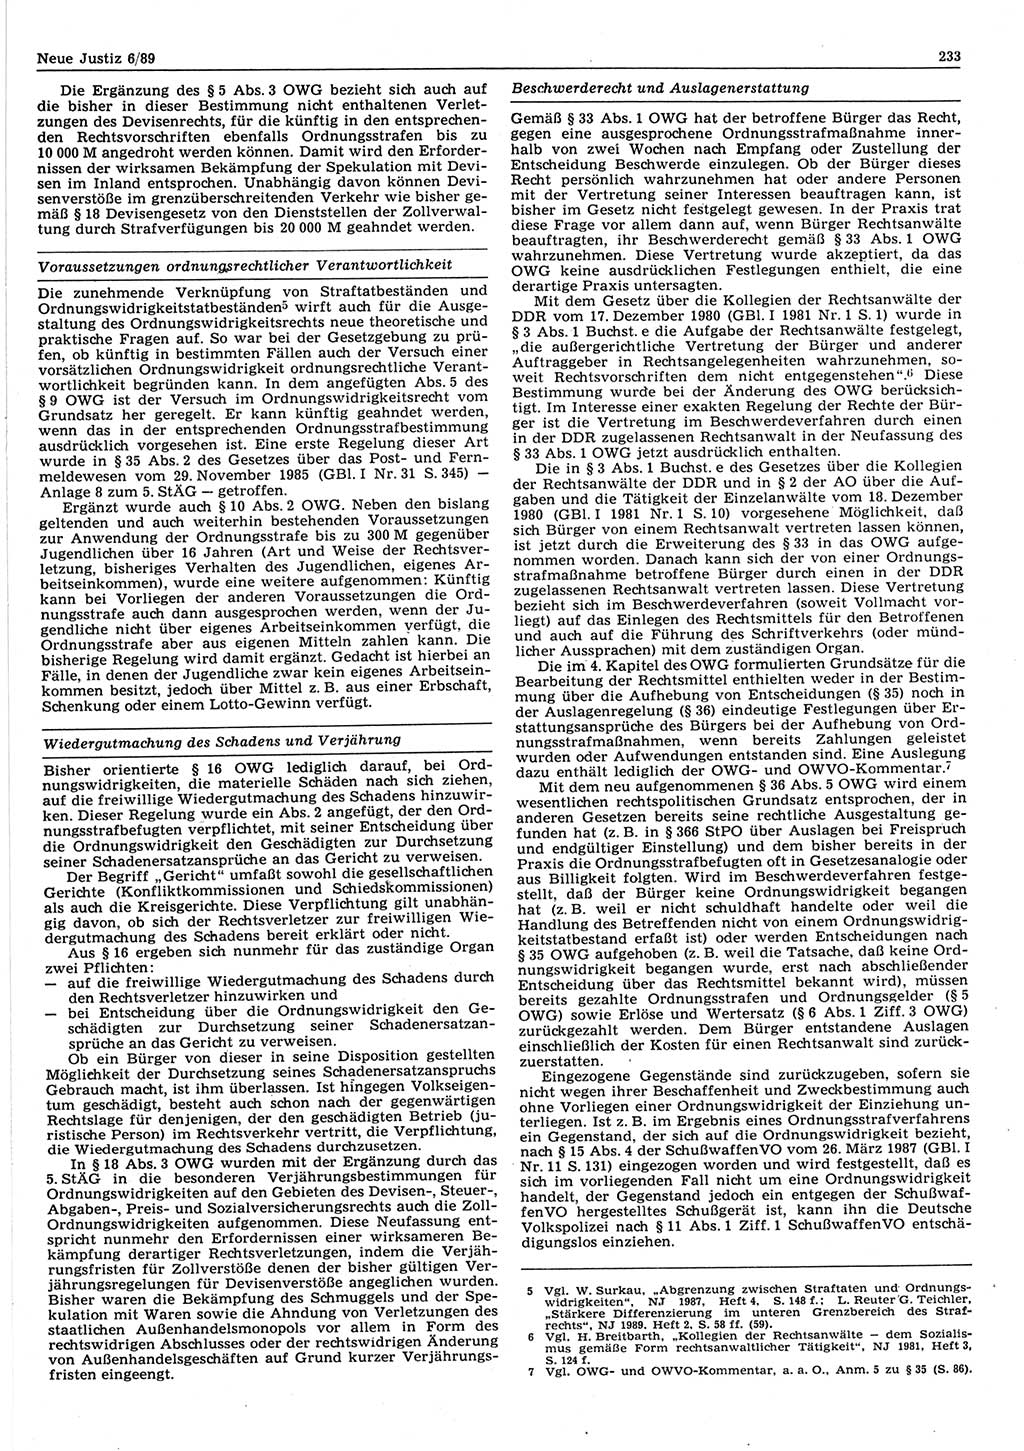 Neue Justiz (NJ), Zeitschrift für sozialistisches Recht und Gesetzlichkeit [Deutsche Demokratische Republik (DDR)], 43. Jahrgang 1989, Seite 233 (NJ DDR 1989, S. 233)